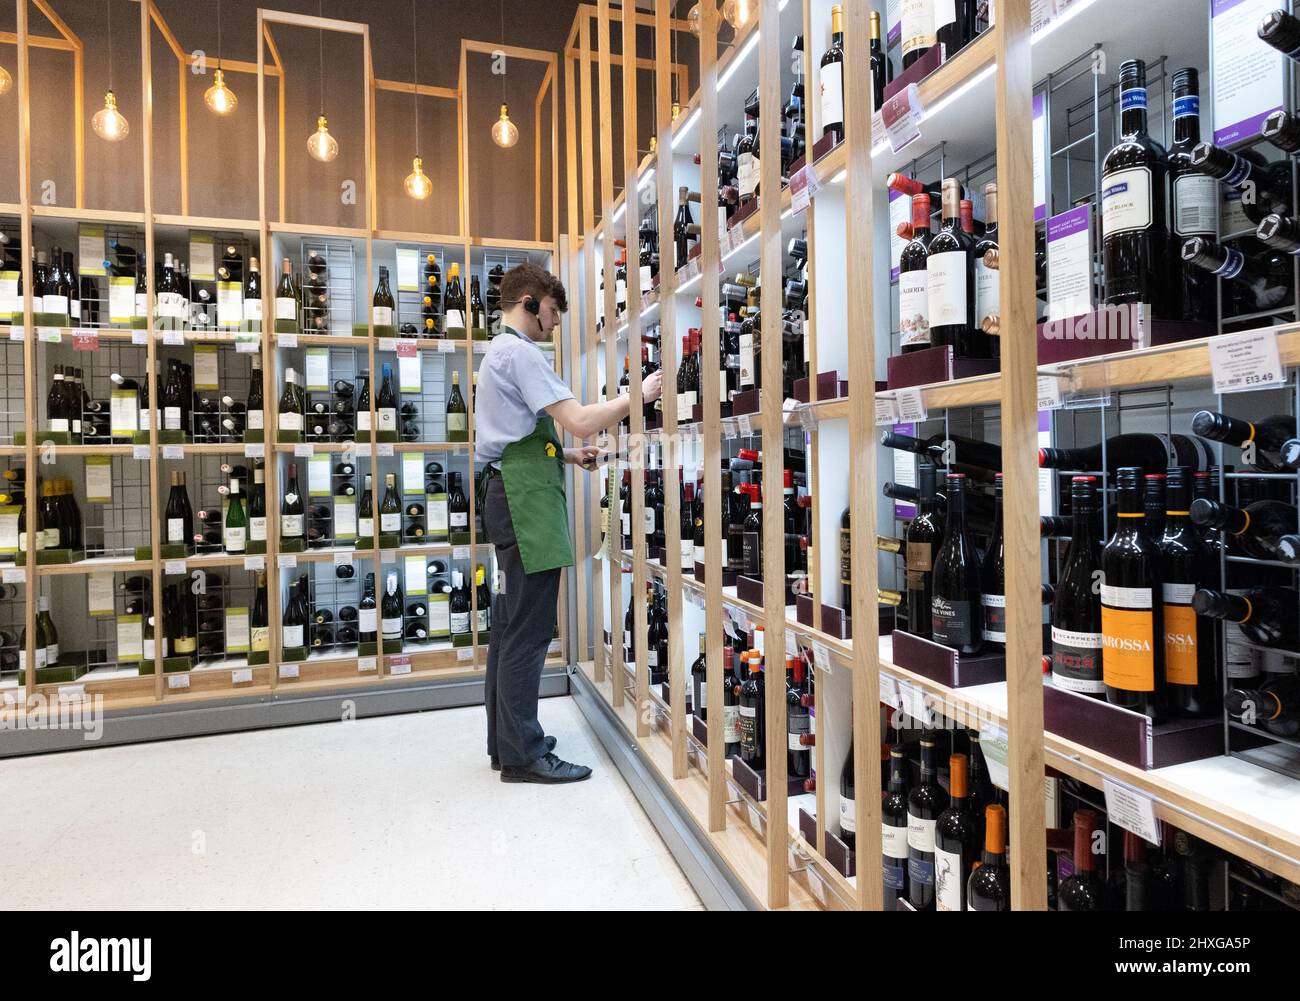 Supermarkt Weinabteilung UK; ein Mitarbeiter, der im Weingang arbeitet, waitrose Supermarkt UK Stockfoto